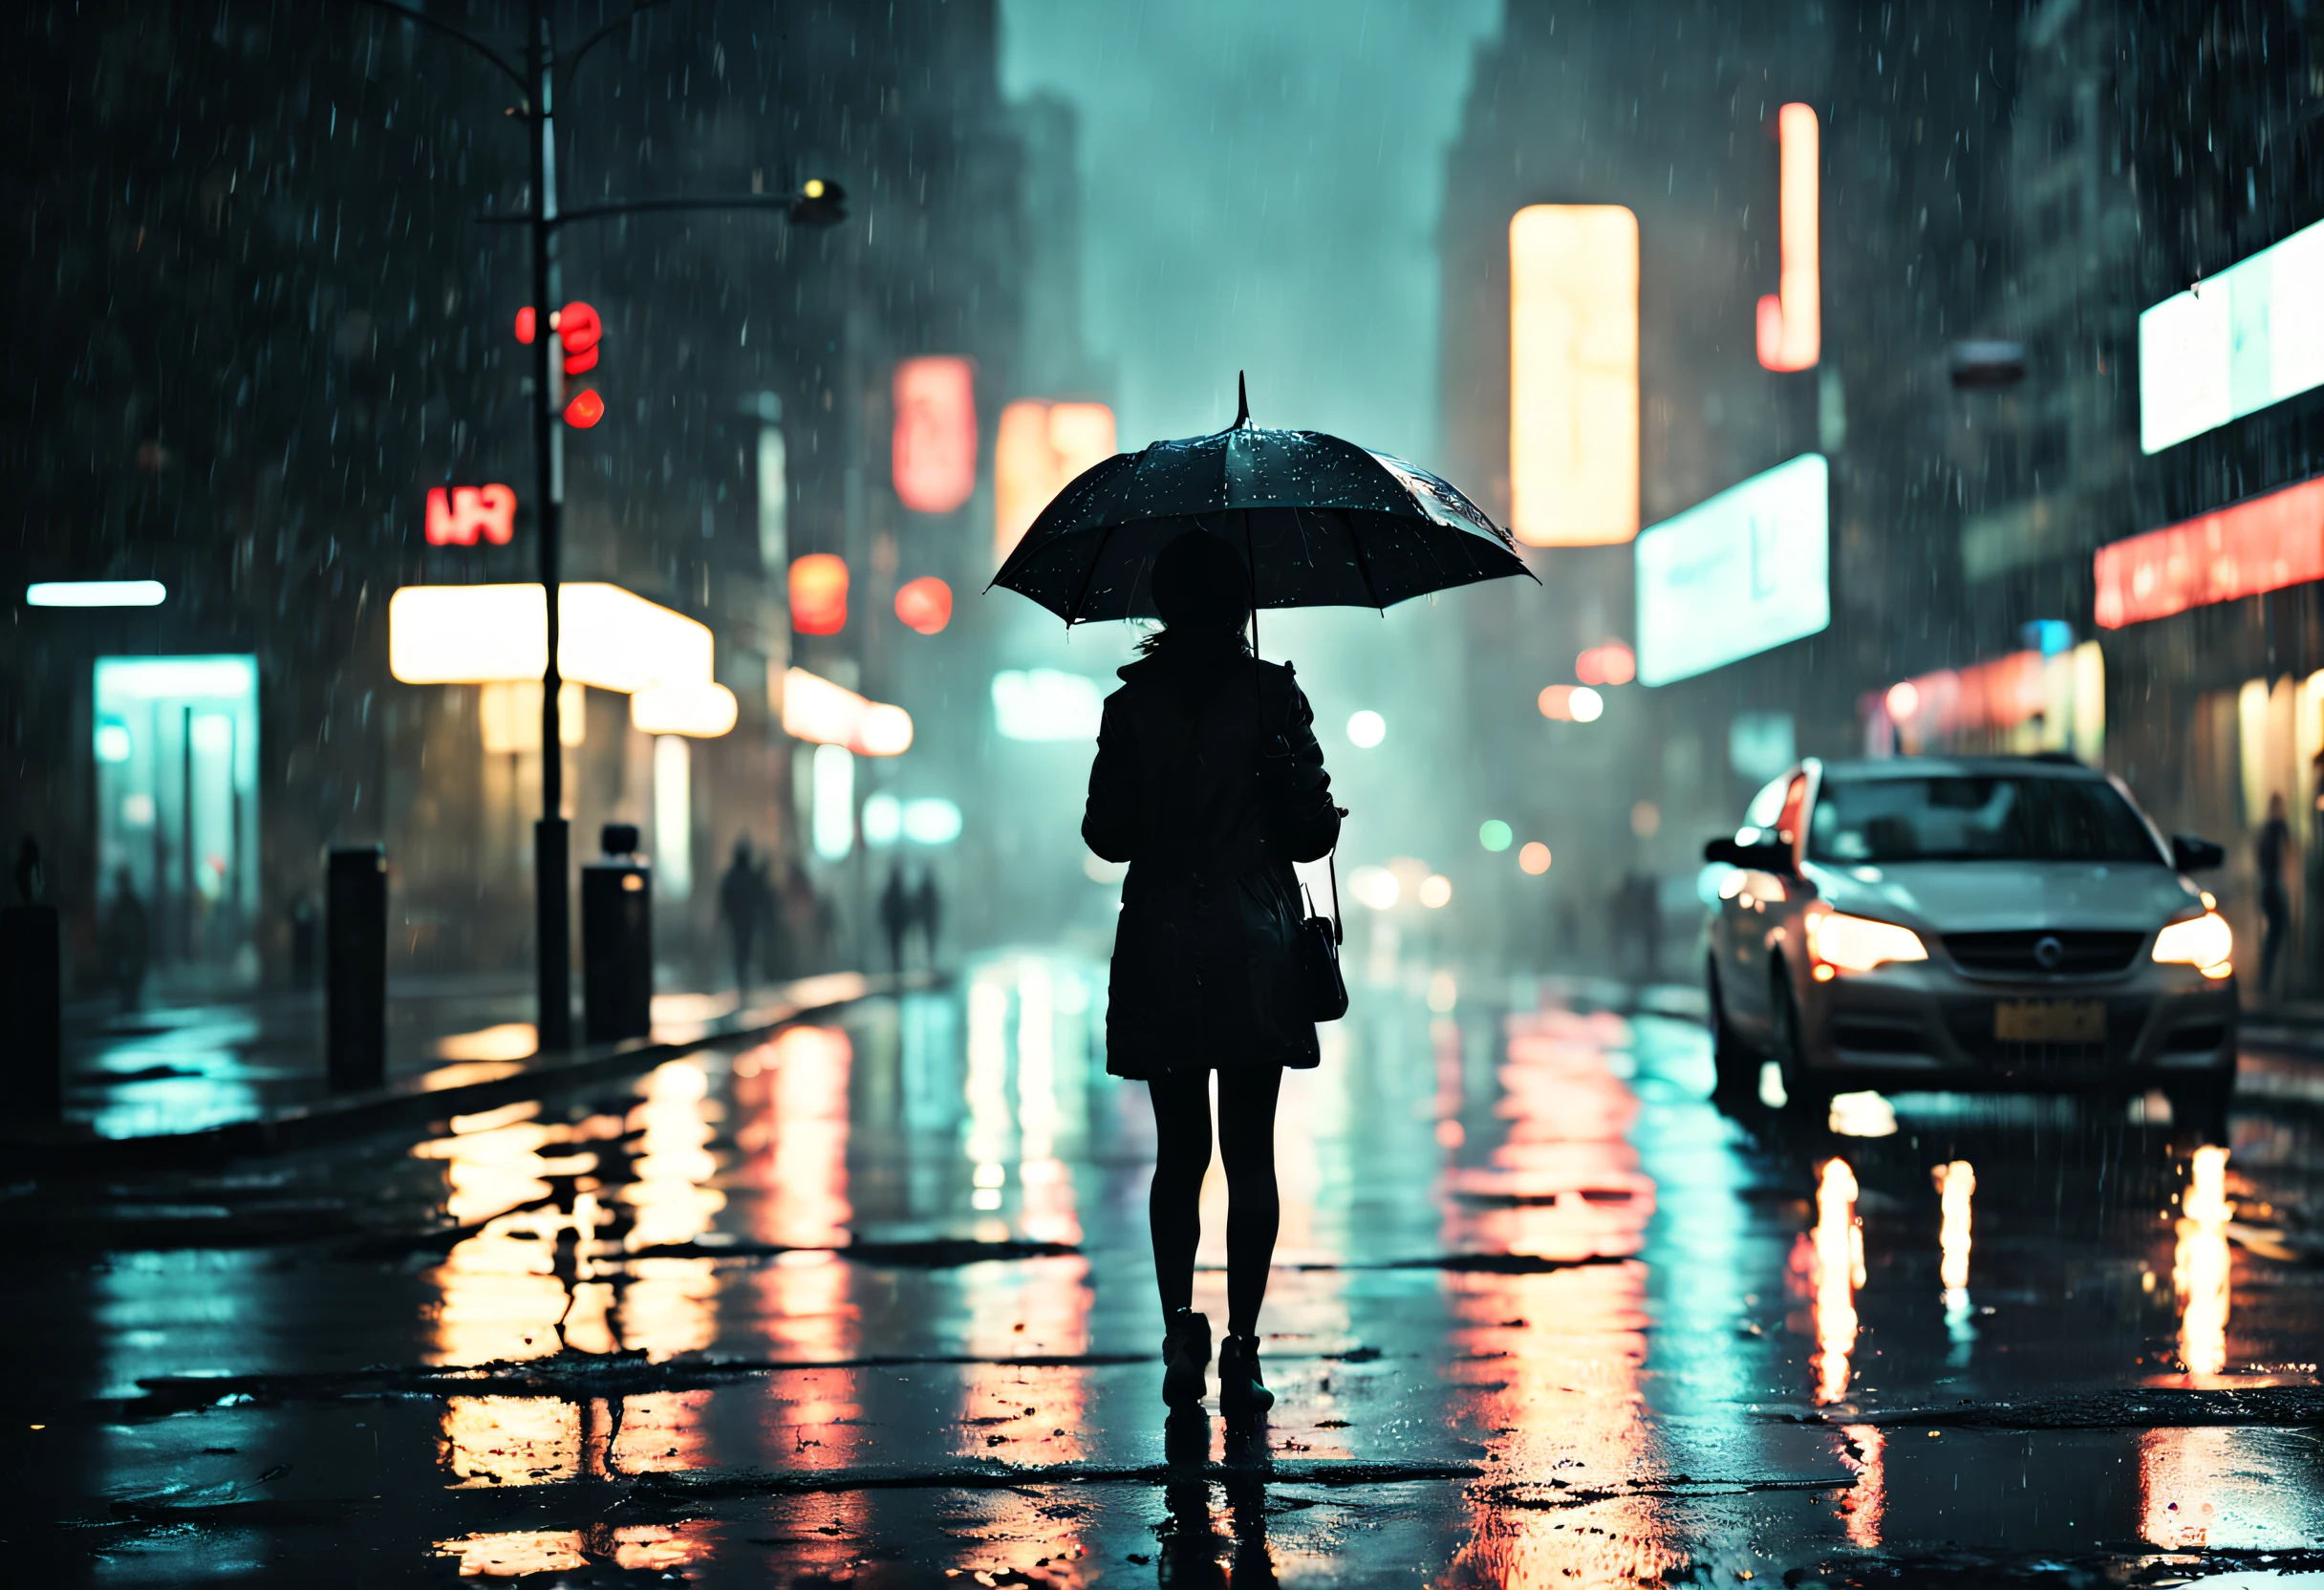 어두운 거리에서 물이 뚝뚝 떨어지는 우산 아래 서 있는 소녀,젖은 도로 위에 반짝이는 빗방울,가로등 불빛에서 뿜어져 나오는 따뜻한 빛,웅덩이에 반사된 네온사인,우산을 들고 서두르는 사람들, 빗방울이 우산에 부딪히는 소리, 젖은 나뭇잎이 땅에 흩어져 있다, 안개 낀 분위기, 가로등에 비춰진 소녀의 실루엣, rainy 도시 풍경 at night, 시네마틱하고 분위기 있는 조명, 빛과 어둠의 극적인 대비, 신비로움과 고독감, 촉촉하고 빛나는 질감, 시원하고 채도가 낮은 색상 팔레트, 인상주의적이고 몽환적인 예술 스타일. (최고의 품질, 4K, 매우 상세한, 현실적인:1.37), 비오는 밤, 도시 풍경, 시네마틱 조명, 젖은 질감, 변덕스러운 분위기, 인상주의 미술 스타일